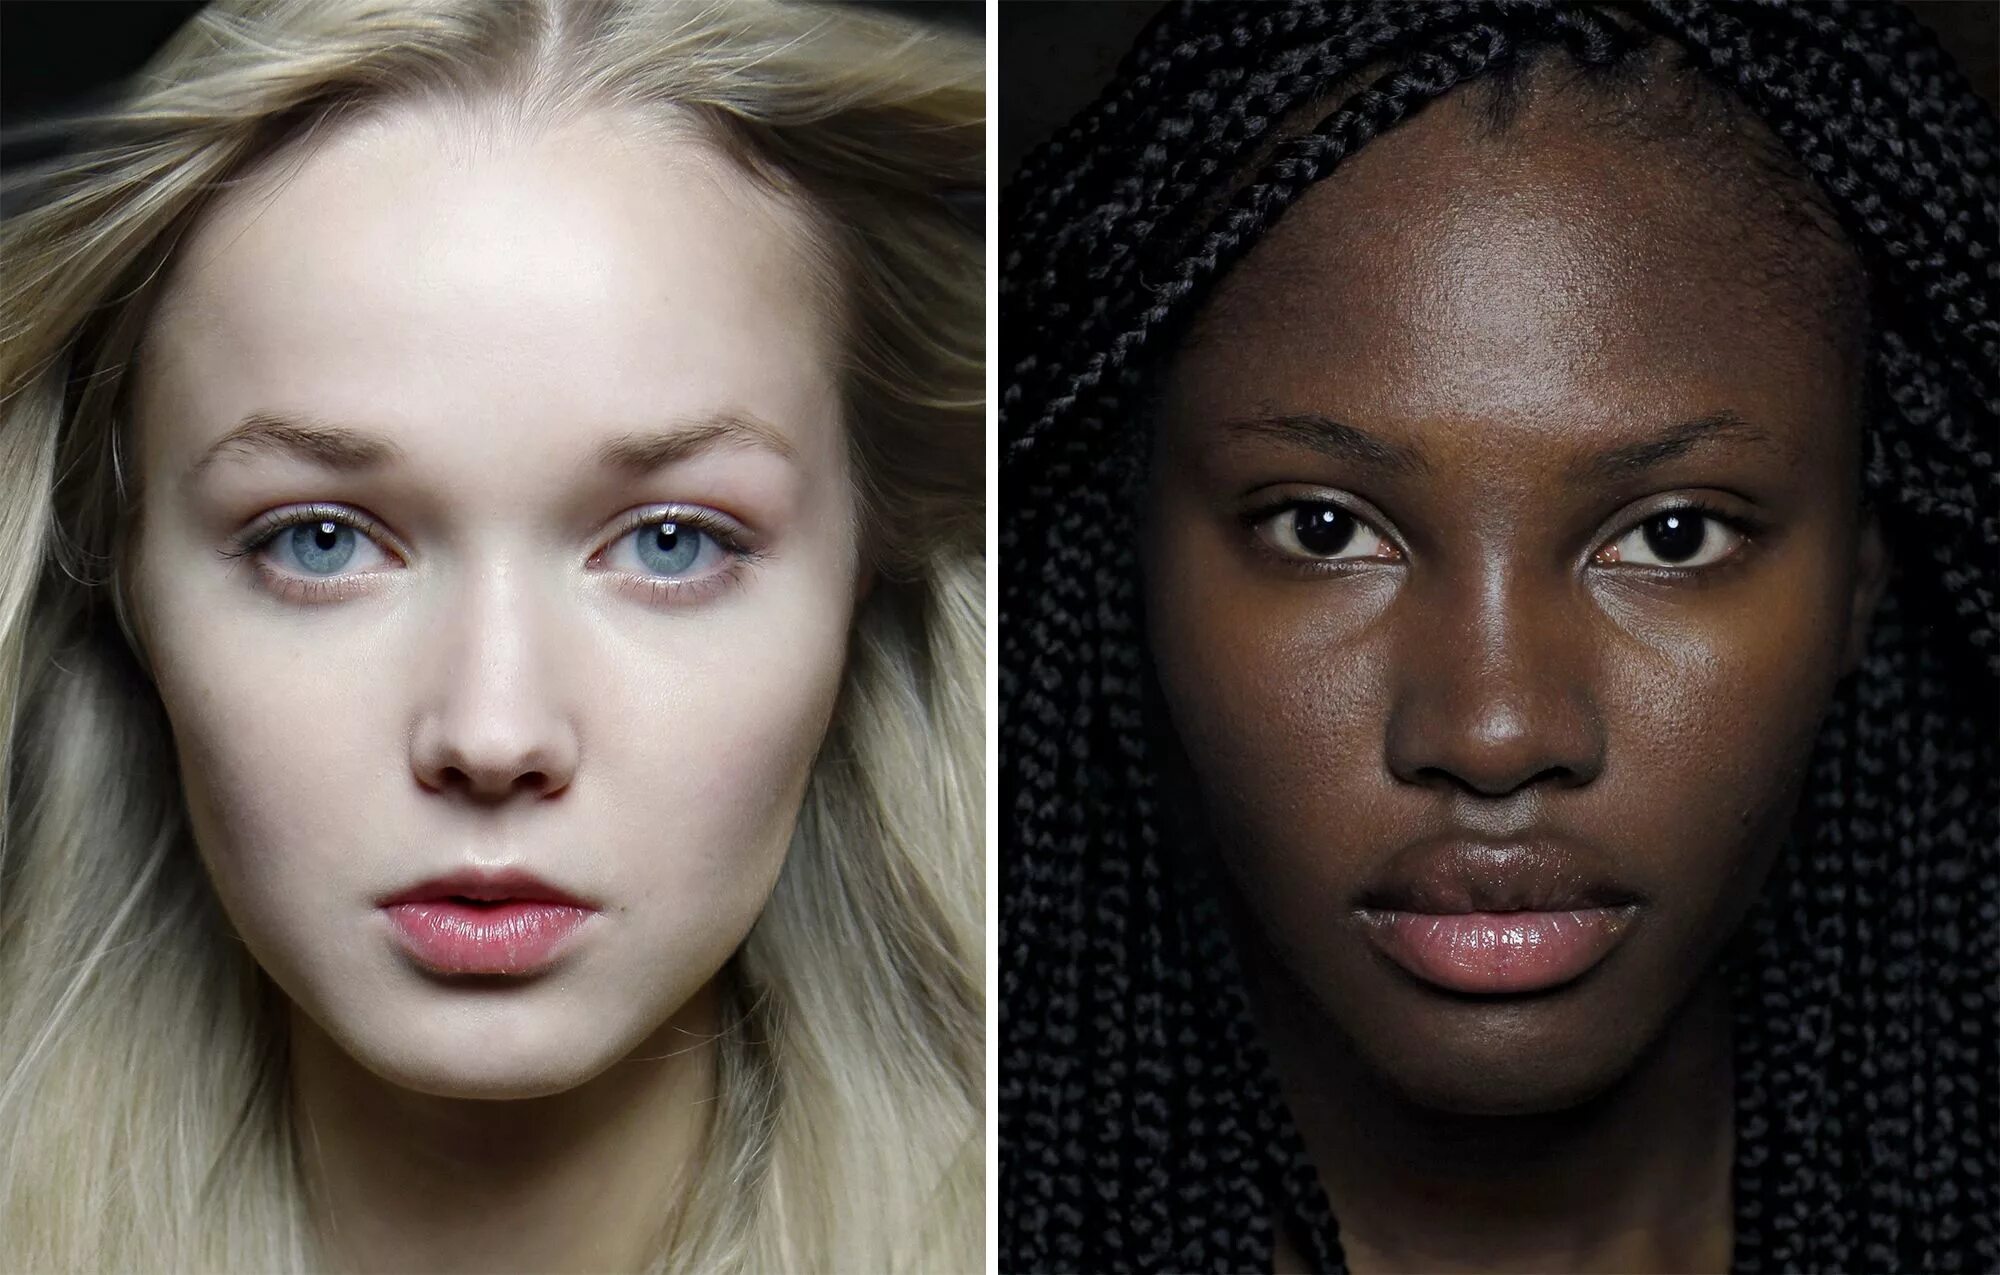 Светлые волосы национальность. Люди с разной внешностью. Женщины разных рас. Девушки с разным цветом кожи. Европейцы внешность.